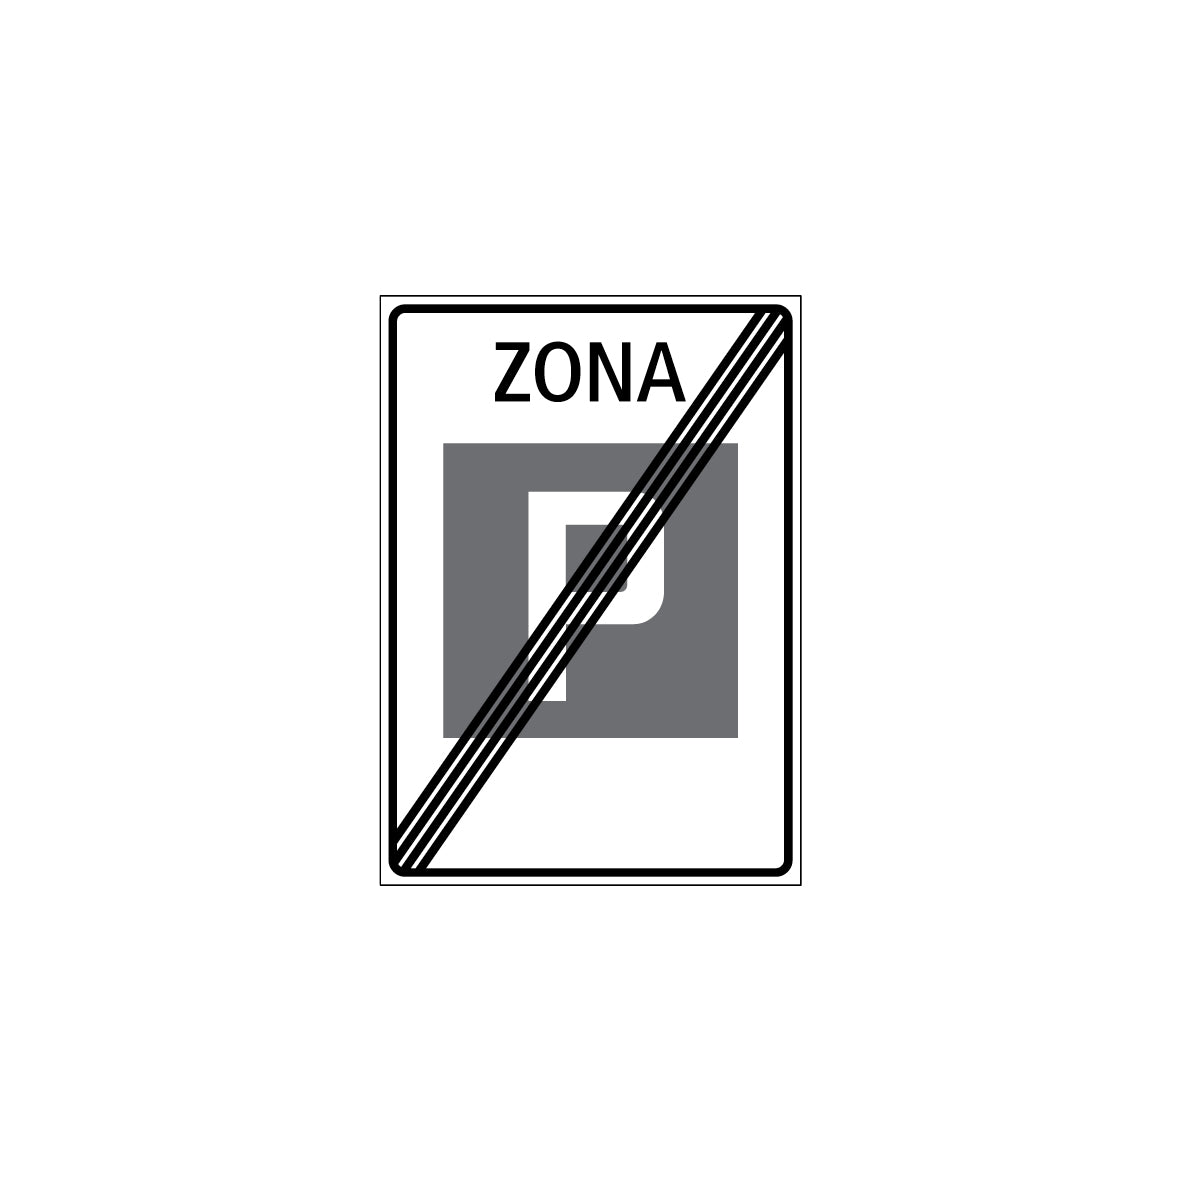 Zonensignal, Ende der Zone, 2.59.2f